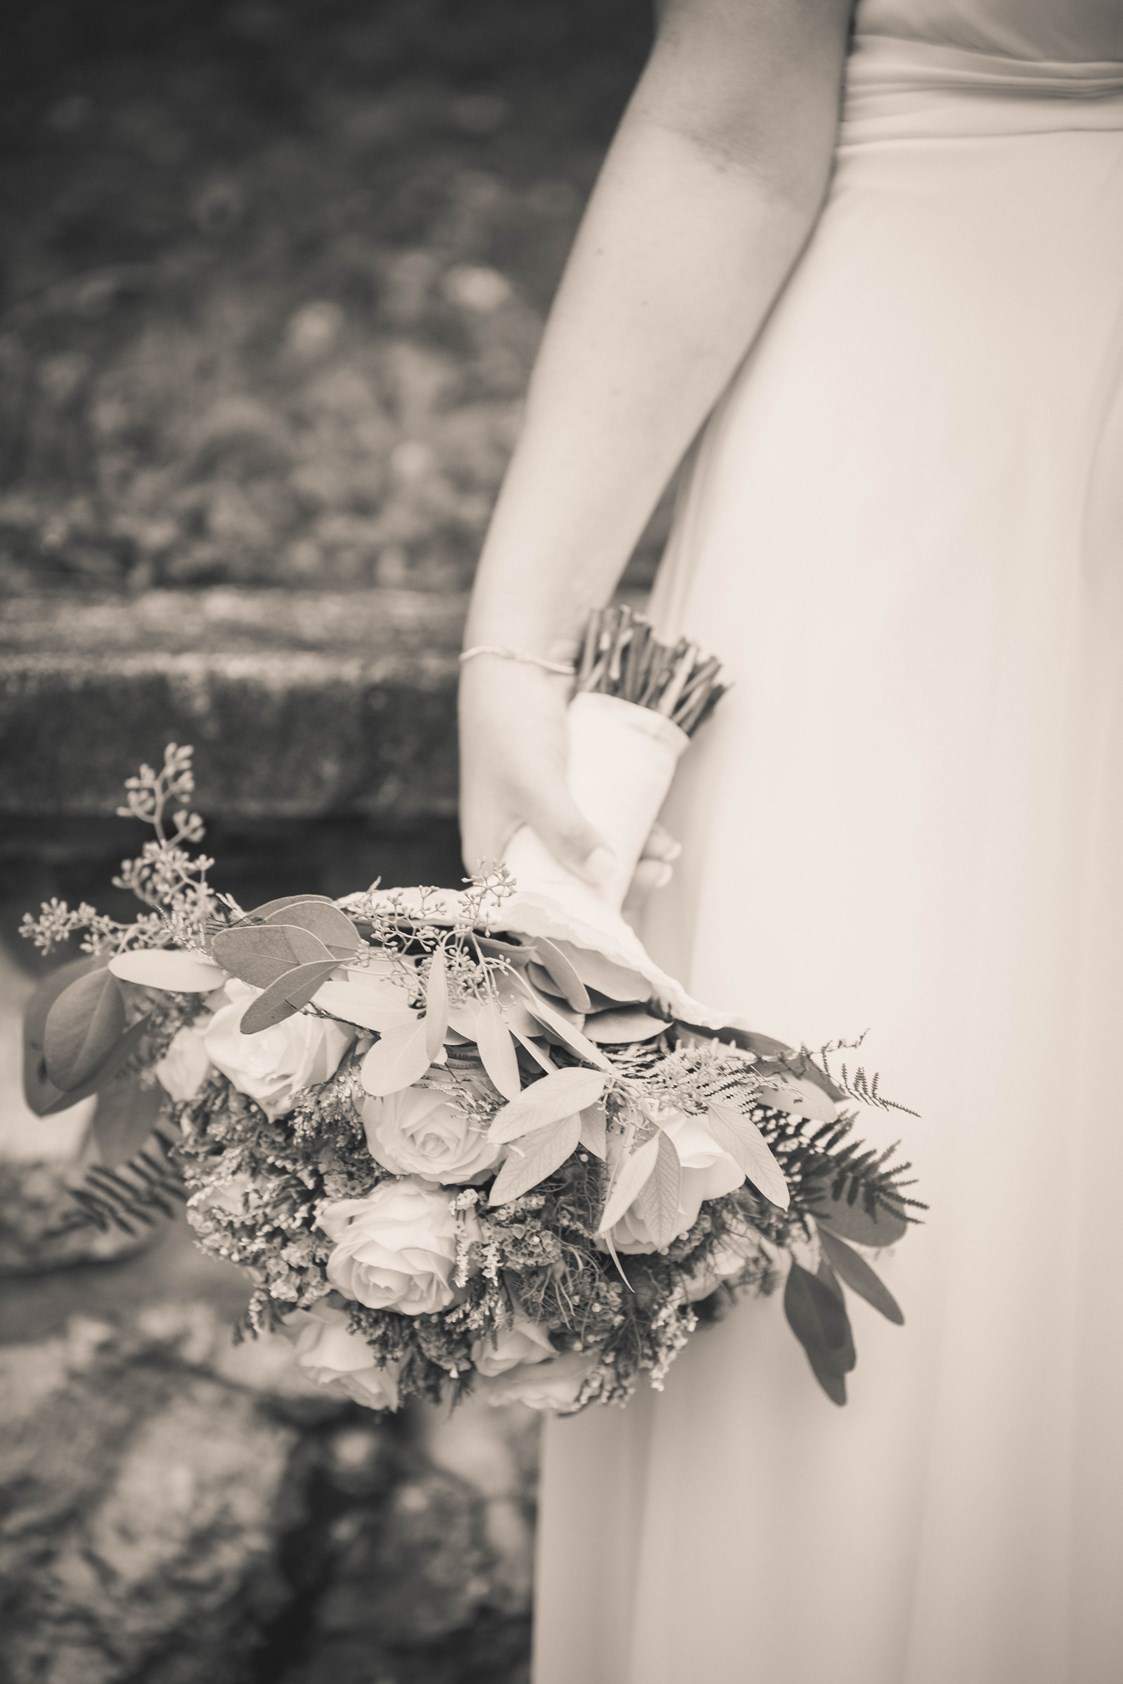 Hochzeitsfotograf: PD Photography - Bilder für die Ewigkeit